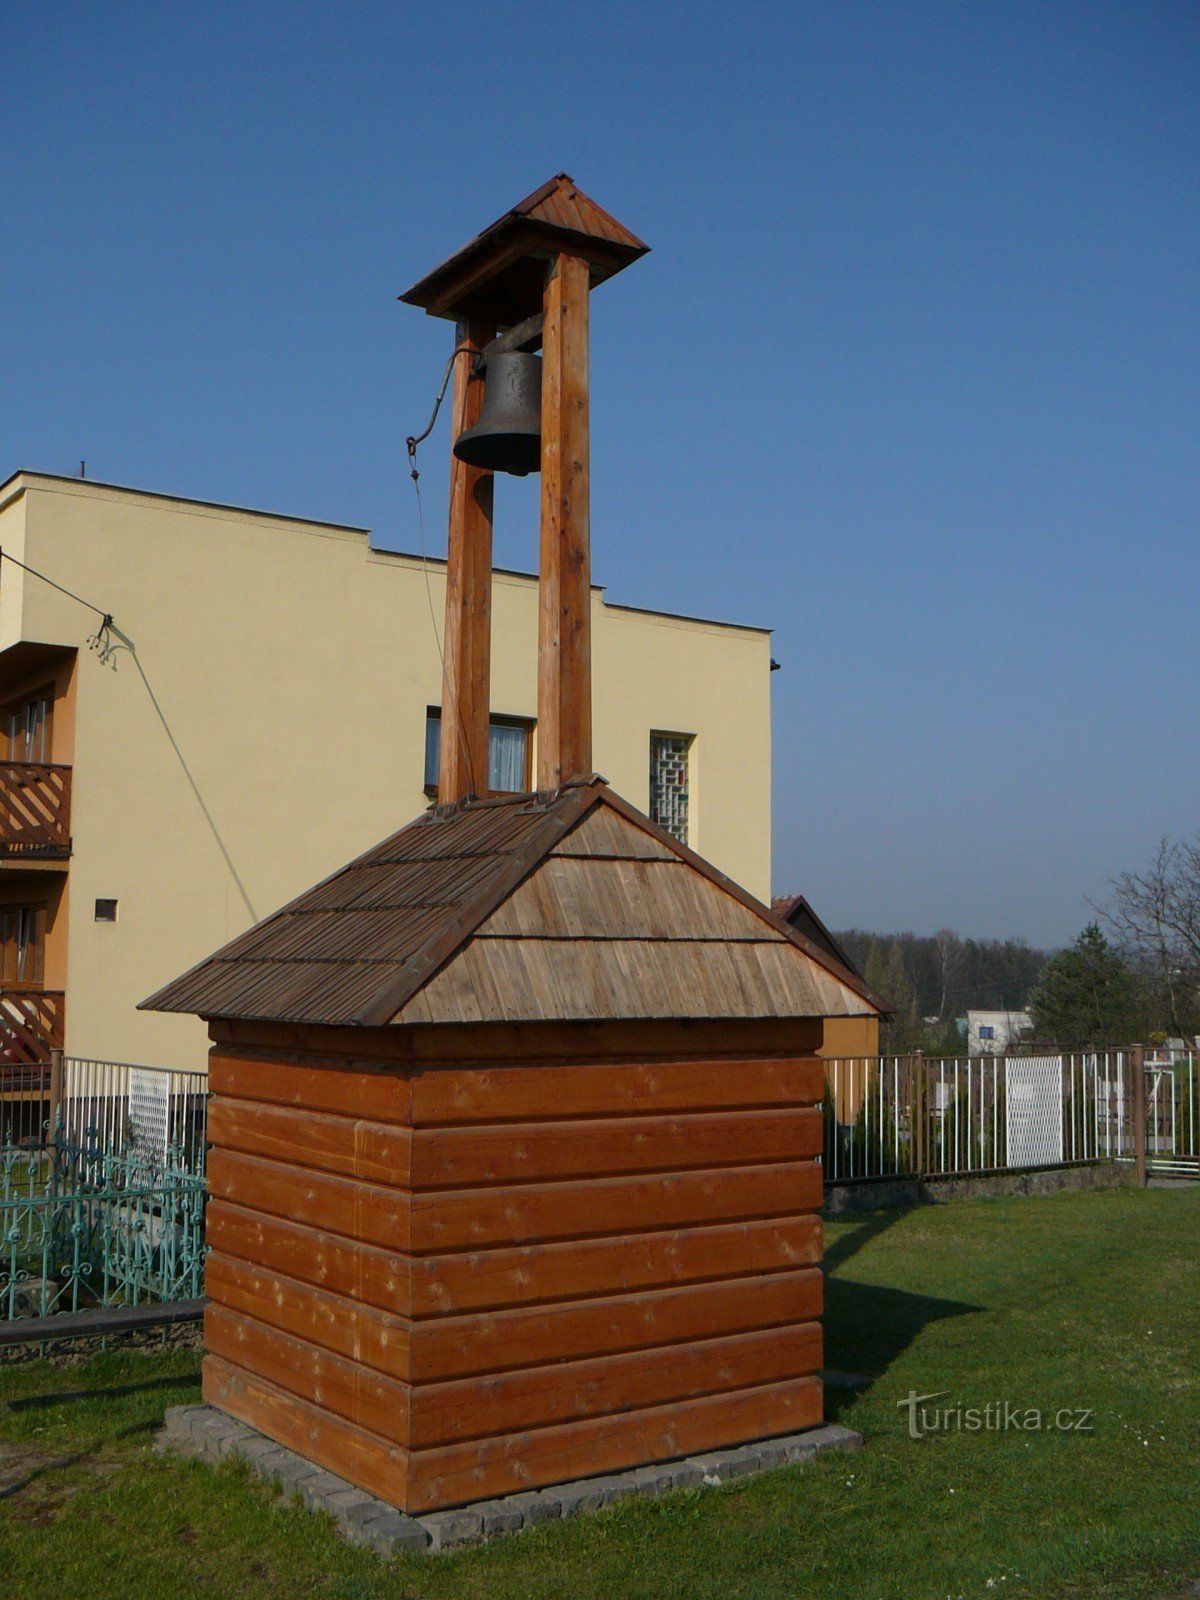 Tháp chuông Volovec